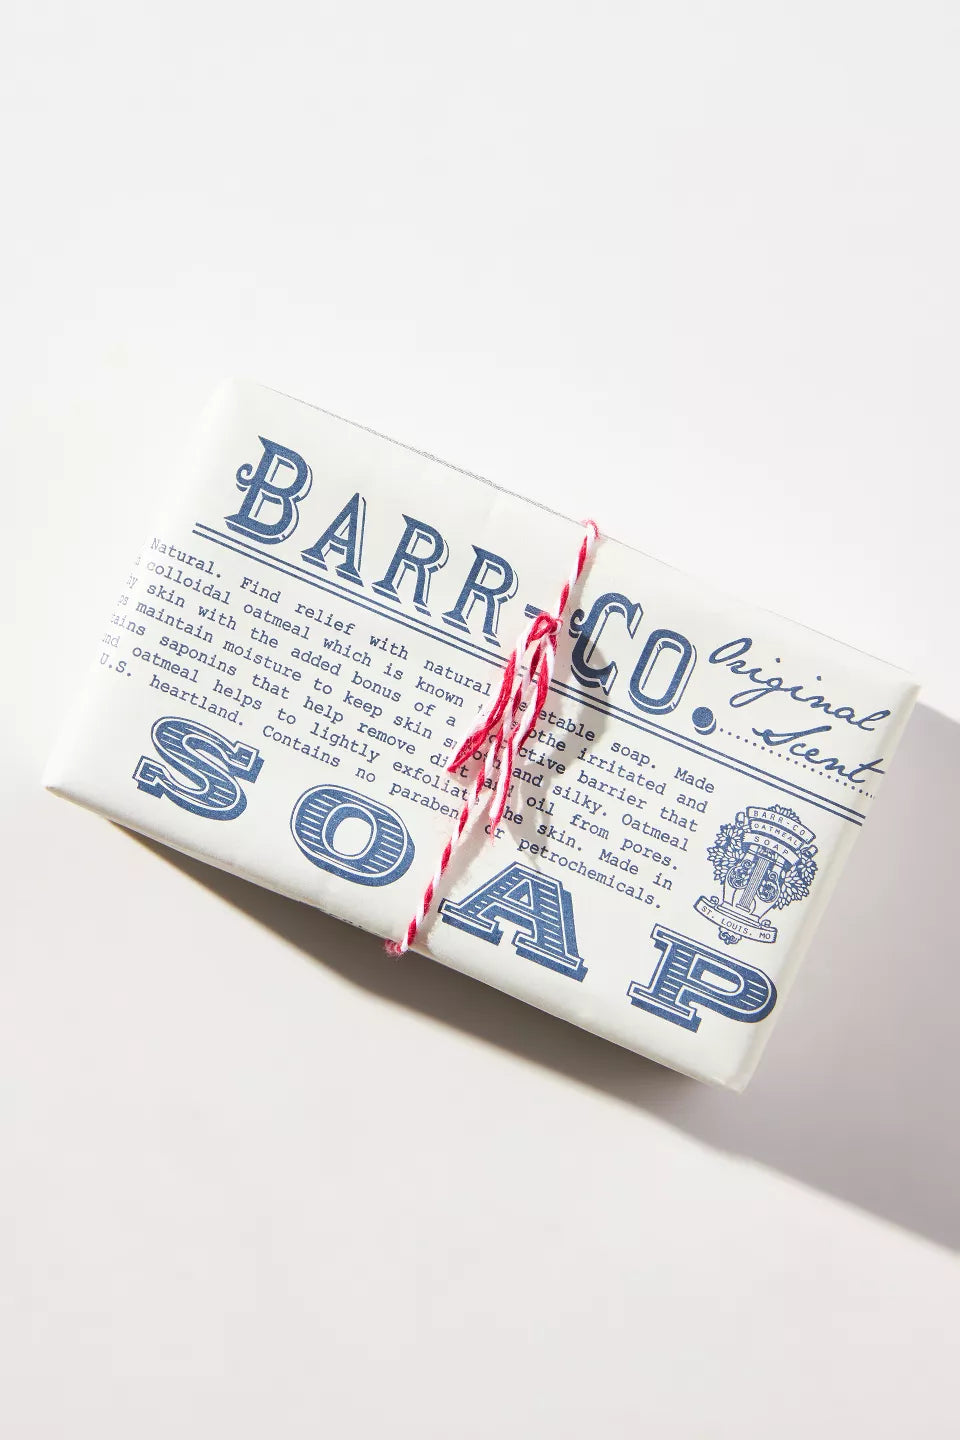 Barr Co. Original Bar Soap